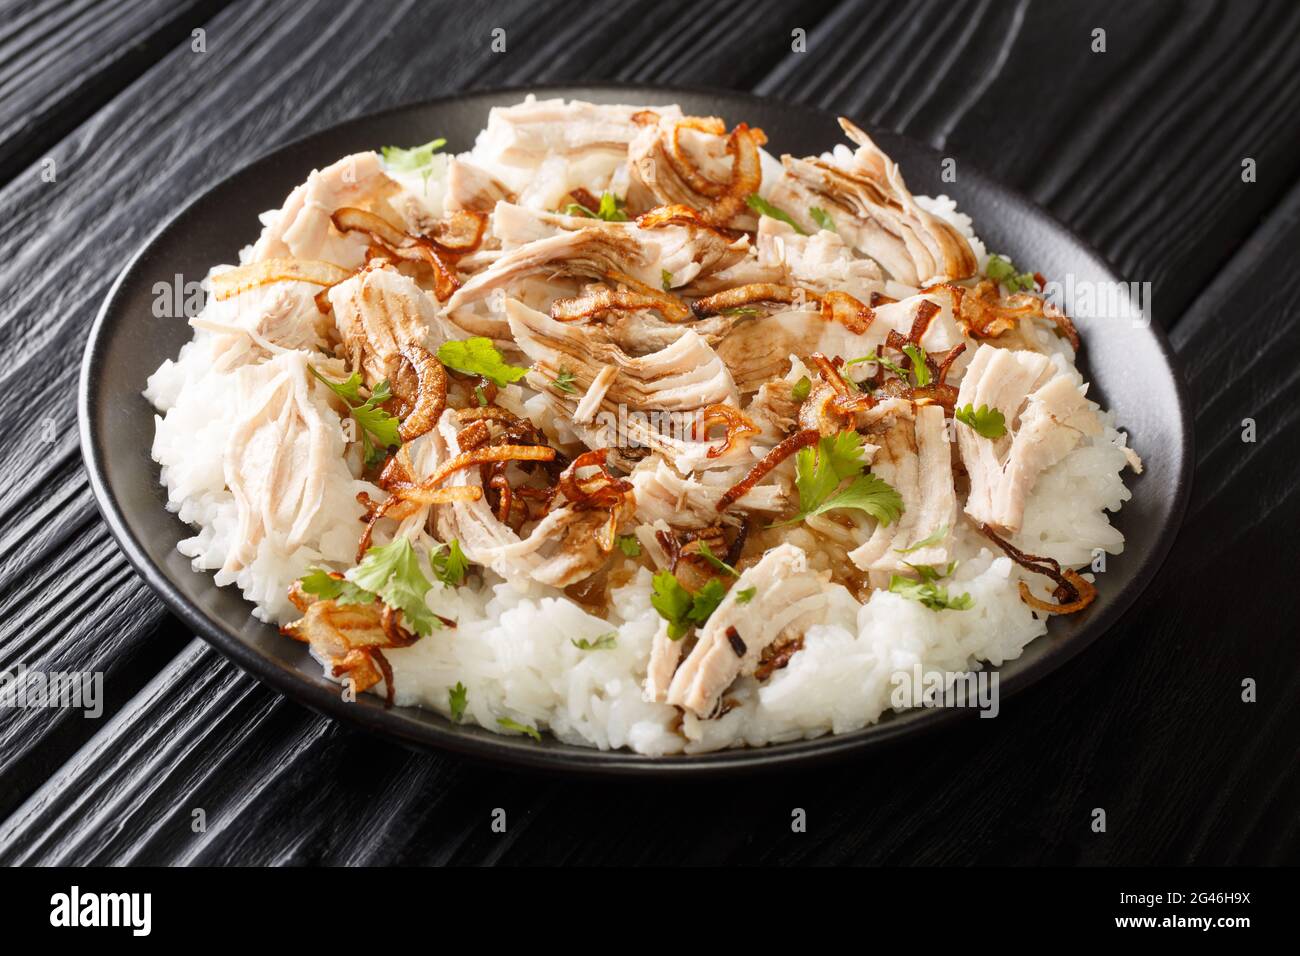 Dinde alimentaire de Taïwan avec riz, oignons frits et sauce épicée dans une assiette sur la table. Horizontale Banque D'Images